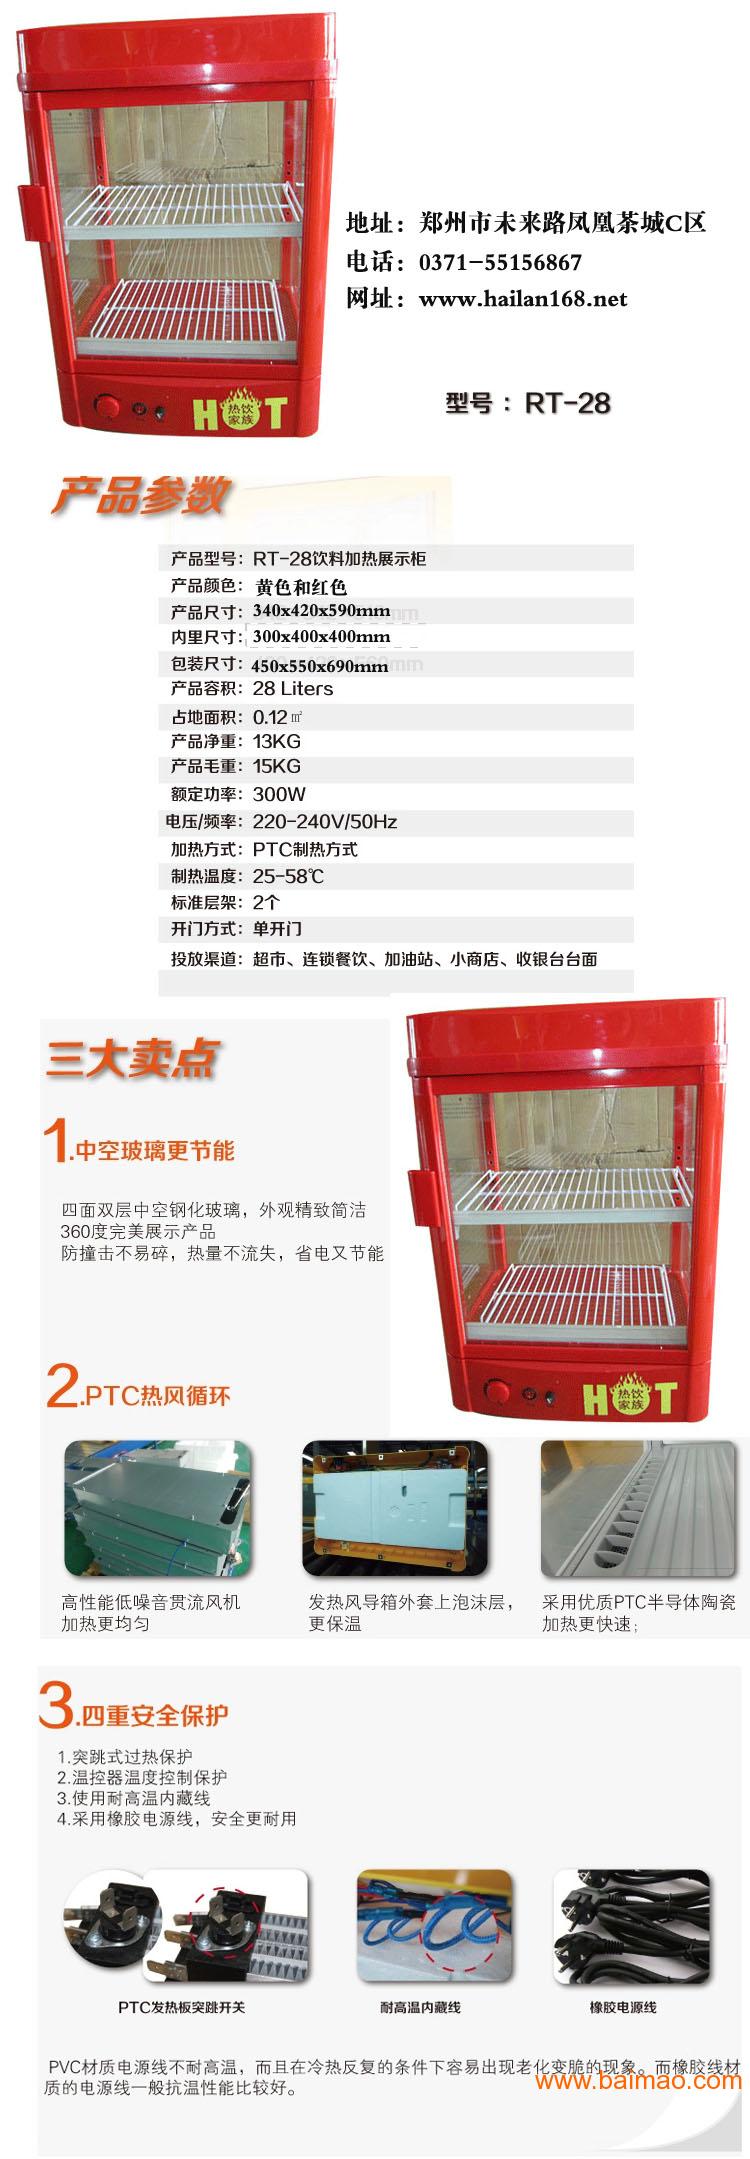 郑州加热柜-饮料加热柜价格-饮料加热柜厂家